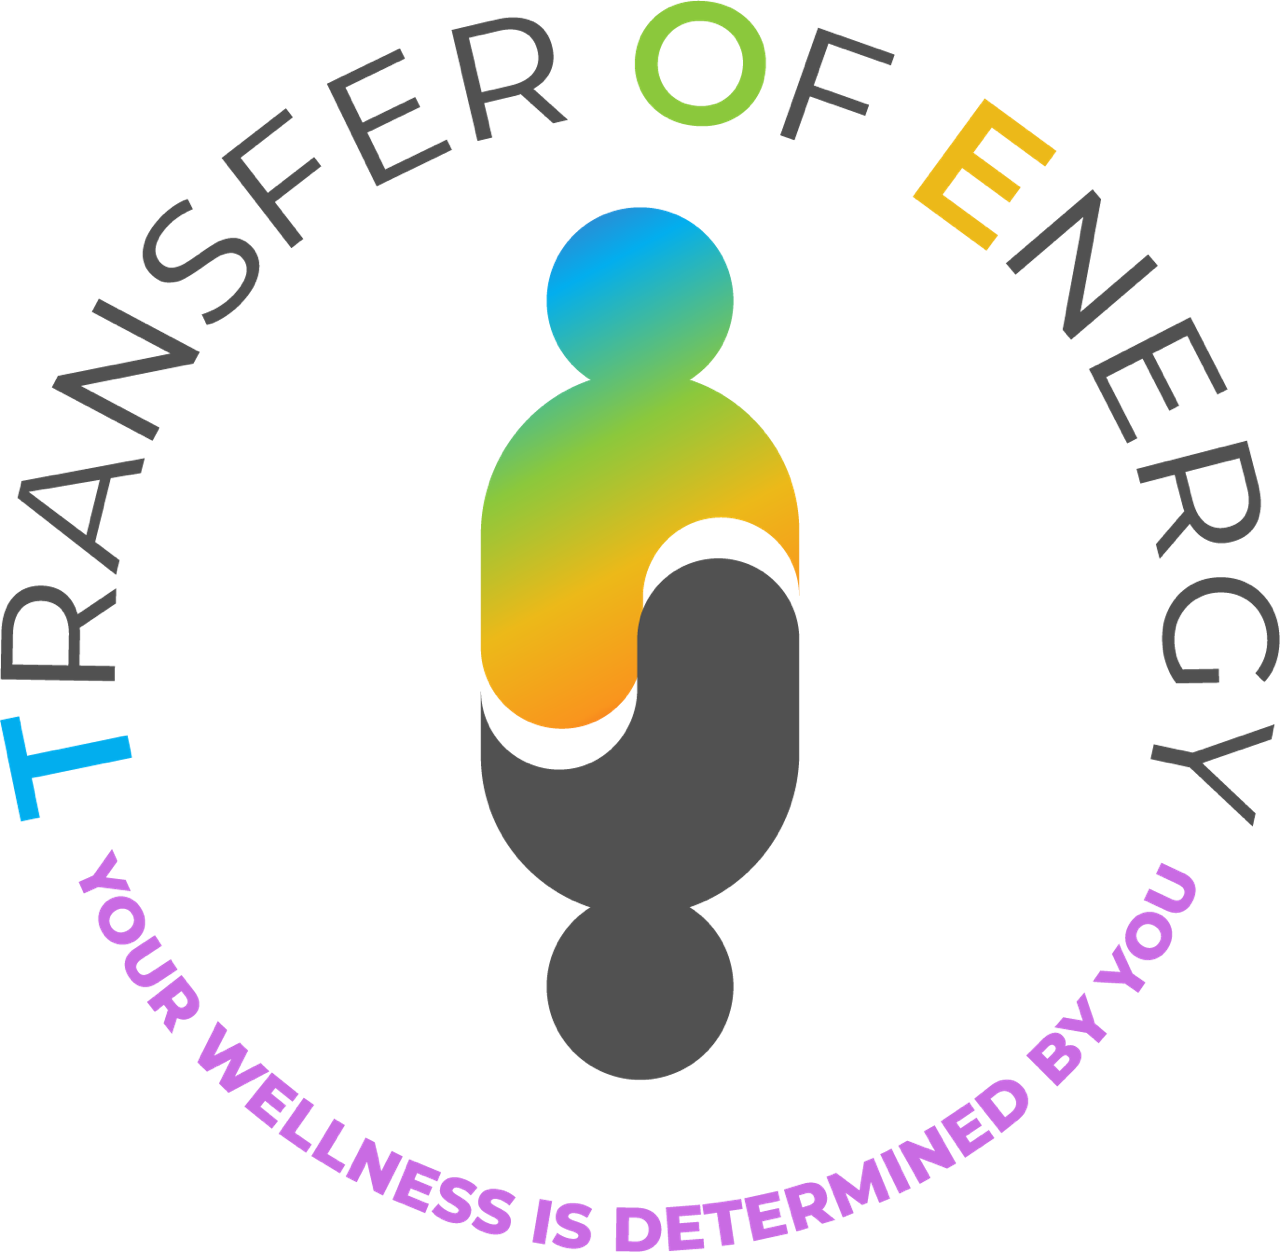 Transfer Of Energy